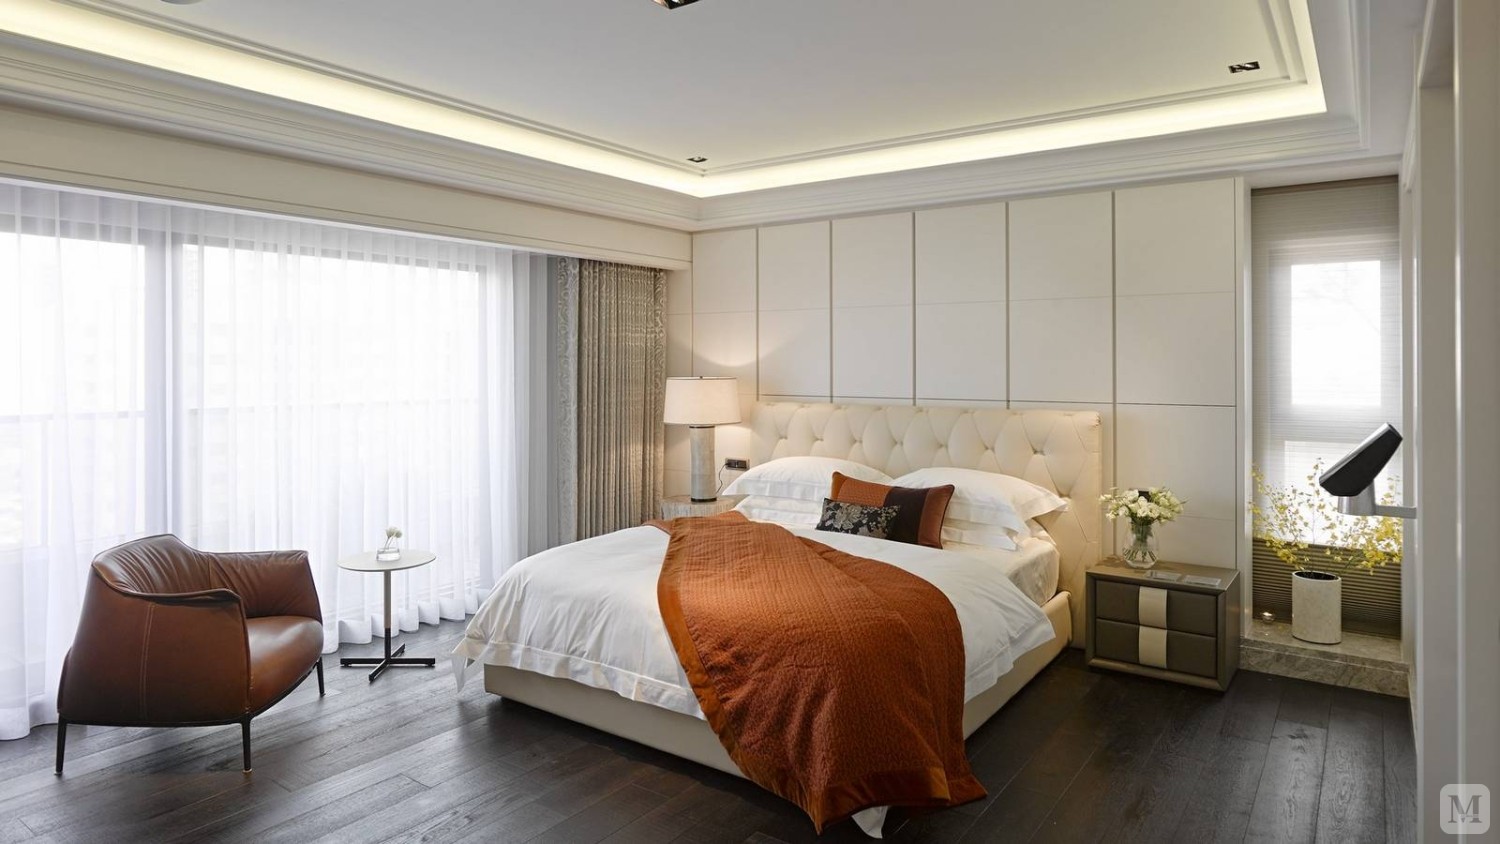 港式风格客厅布置宜简洁自然，色彩和谐，暖色沙发将客厅布置为开放式，电视墙个性的线条设计凸现客厅布置强调的时尚感。